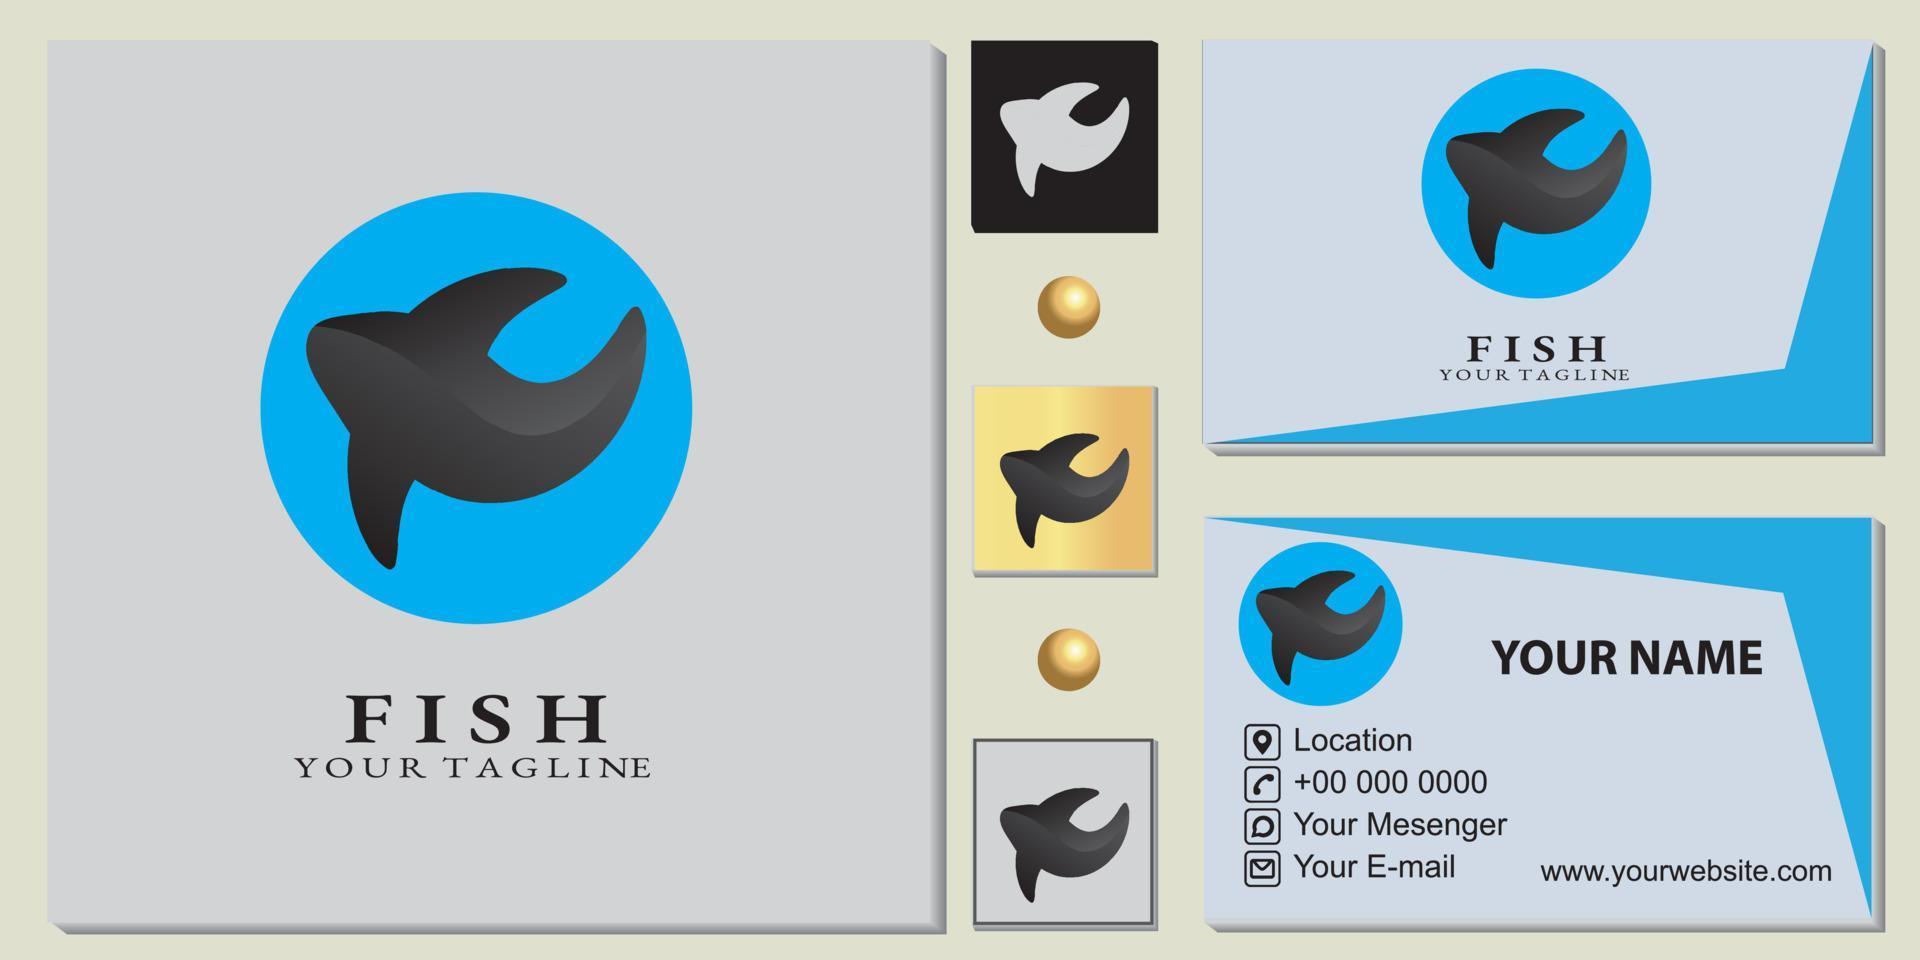 plantilla premium de logotipo de pescado simple con elegante tarjeta de visita vector eps 10